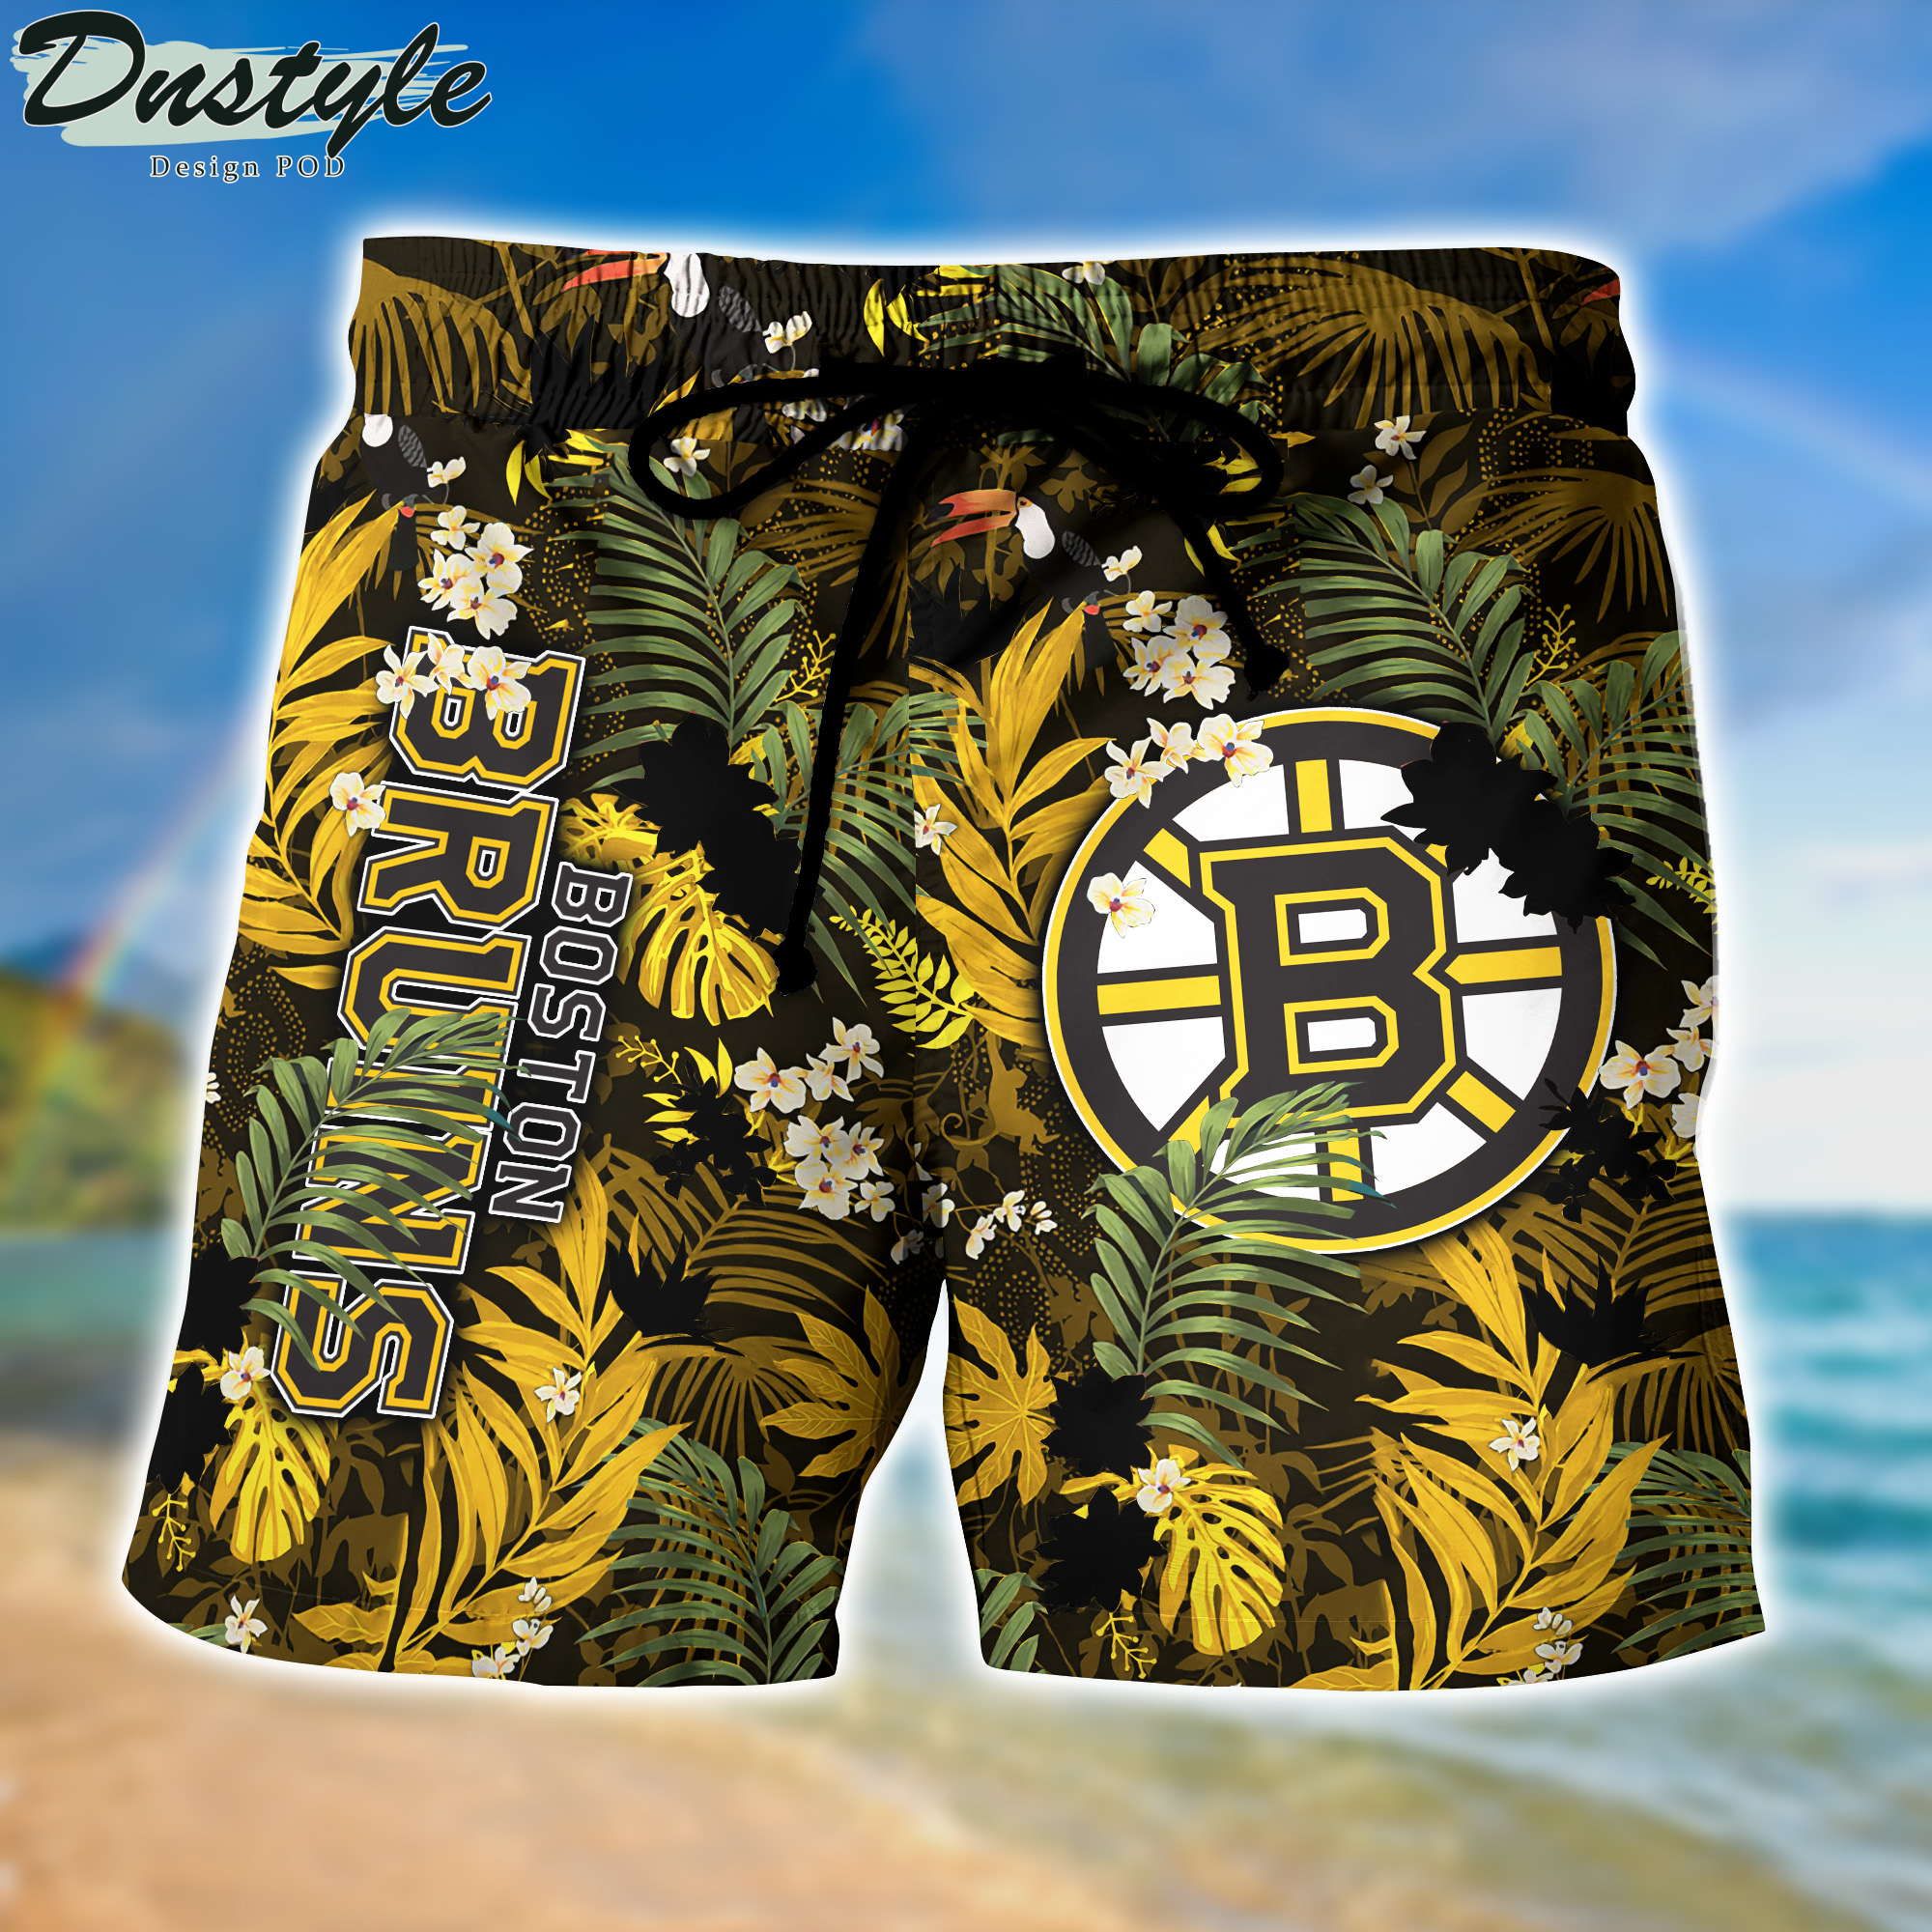 Boston Bruins Hawaii Shirt And Shorts New Collection